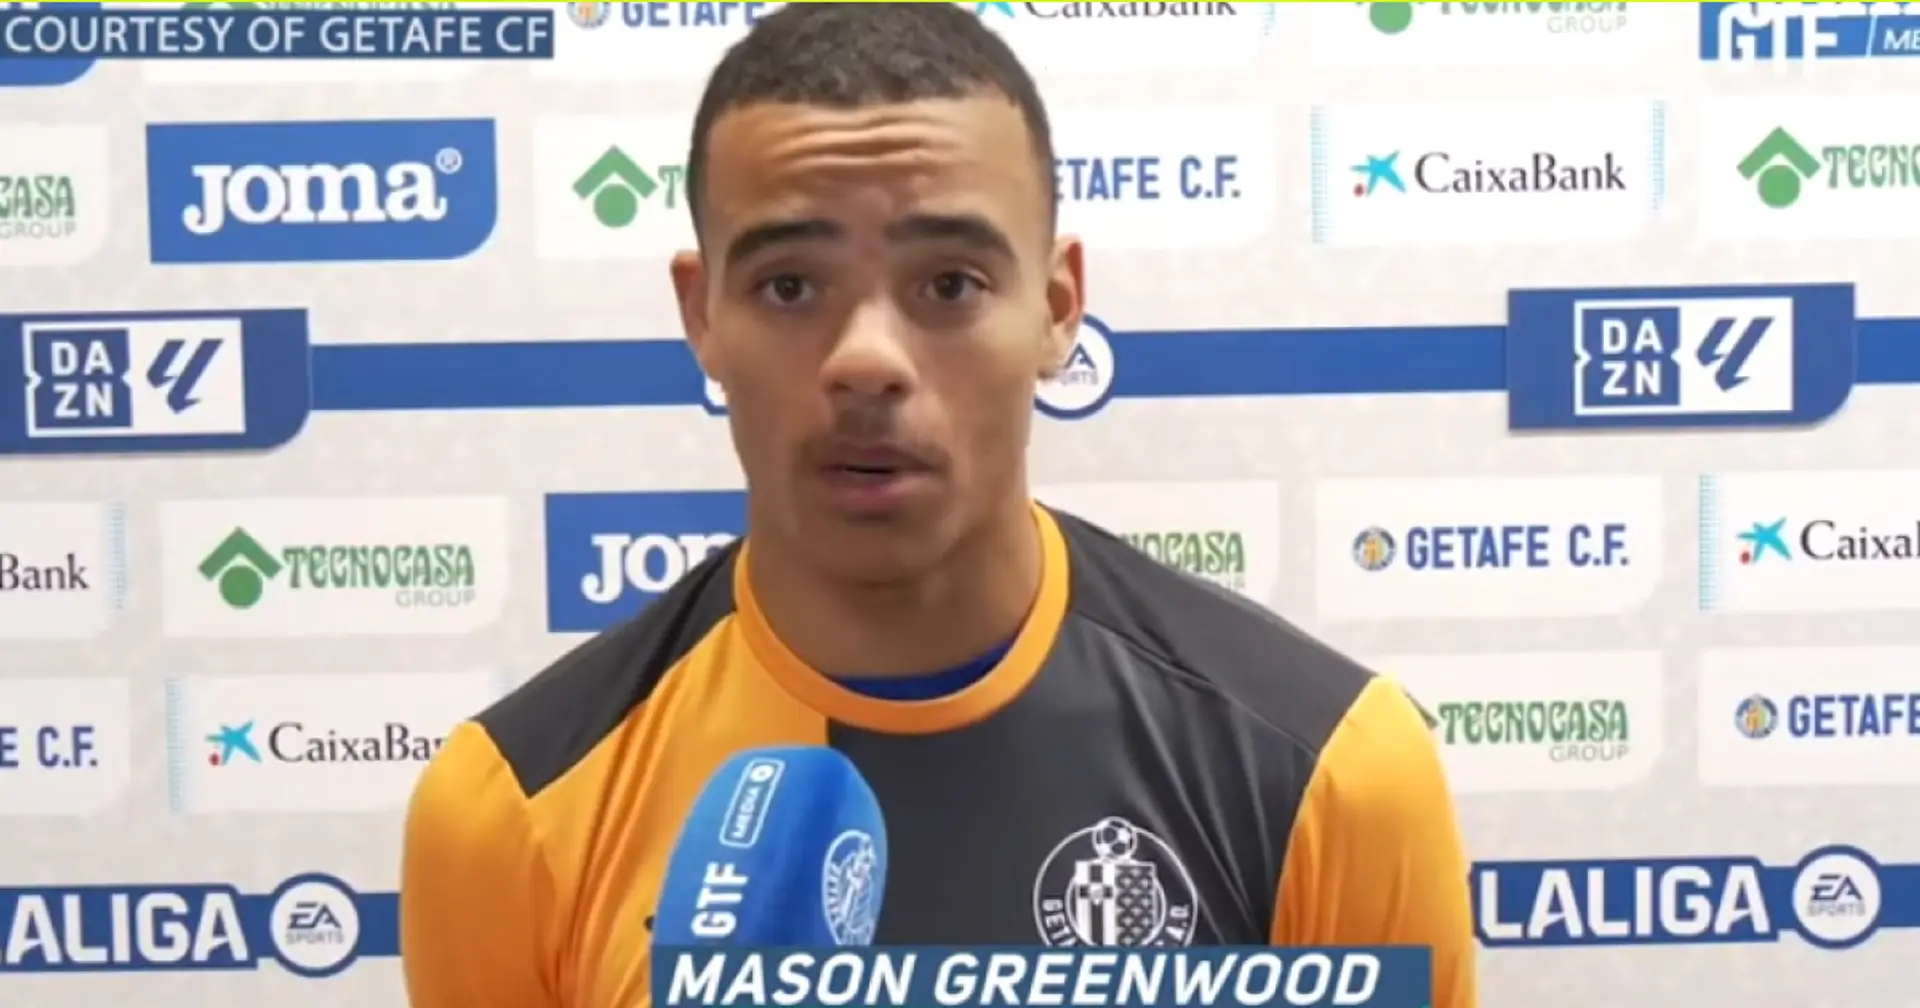 Mason Greenwood se rapproche d'un transfert de rêve au Barça (fiabilité : 3 étoiles)